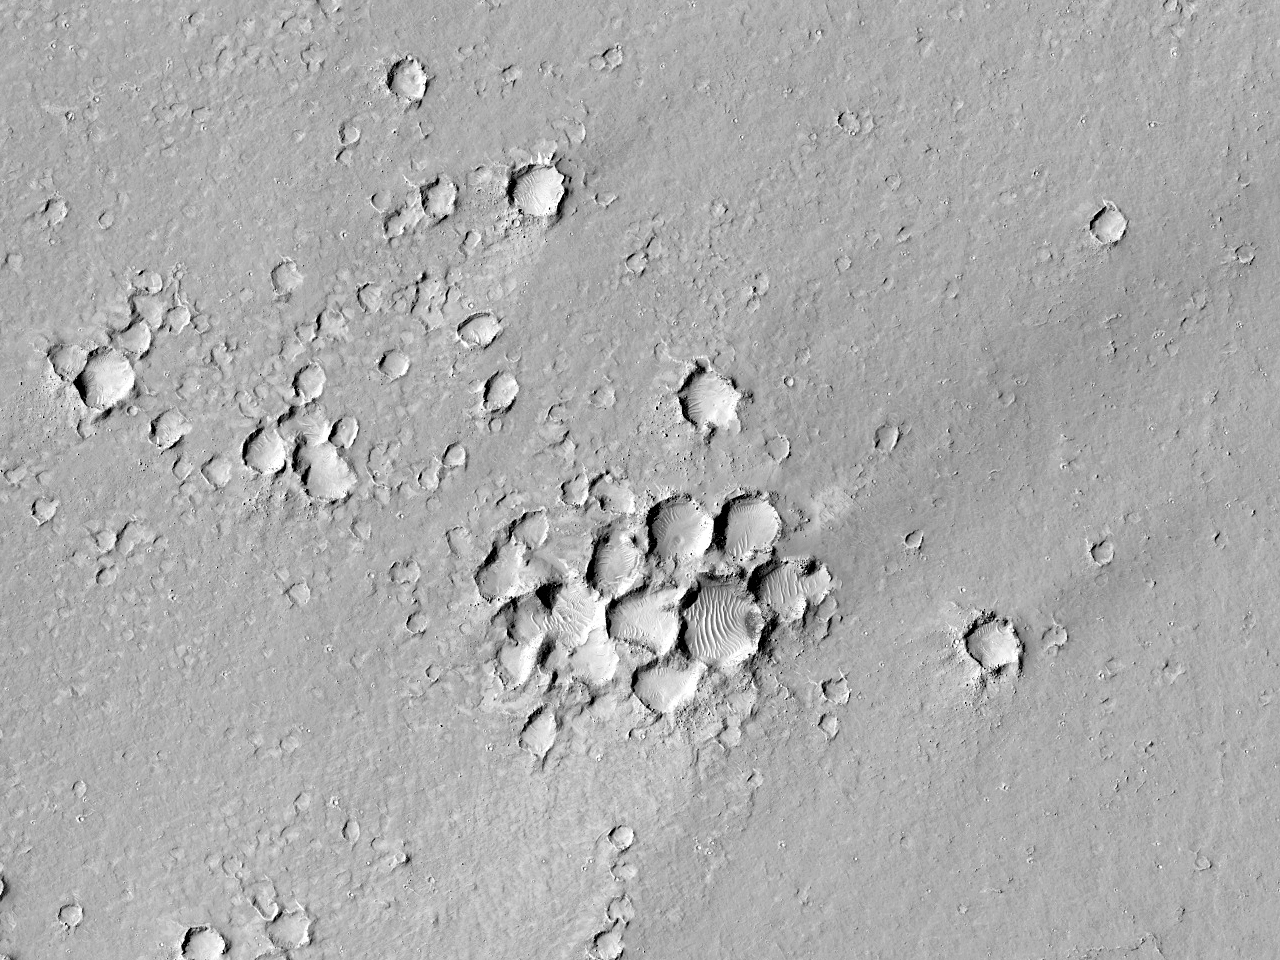 Gromada małych kraterów uderzeniowych